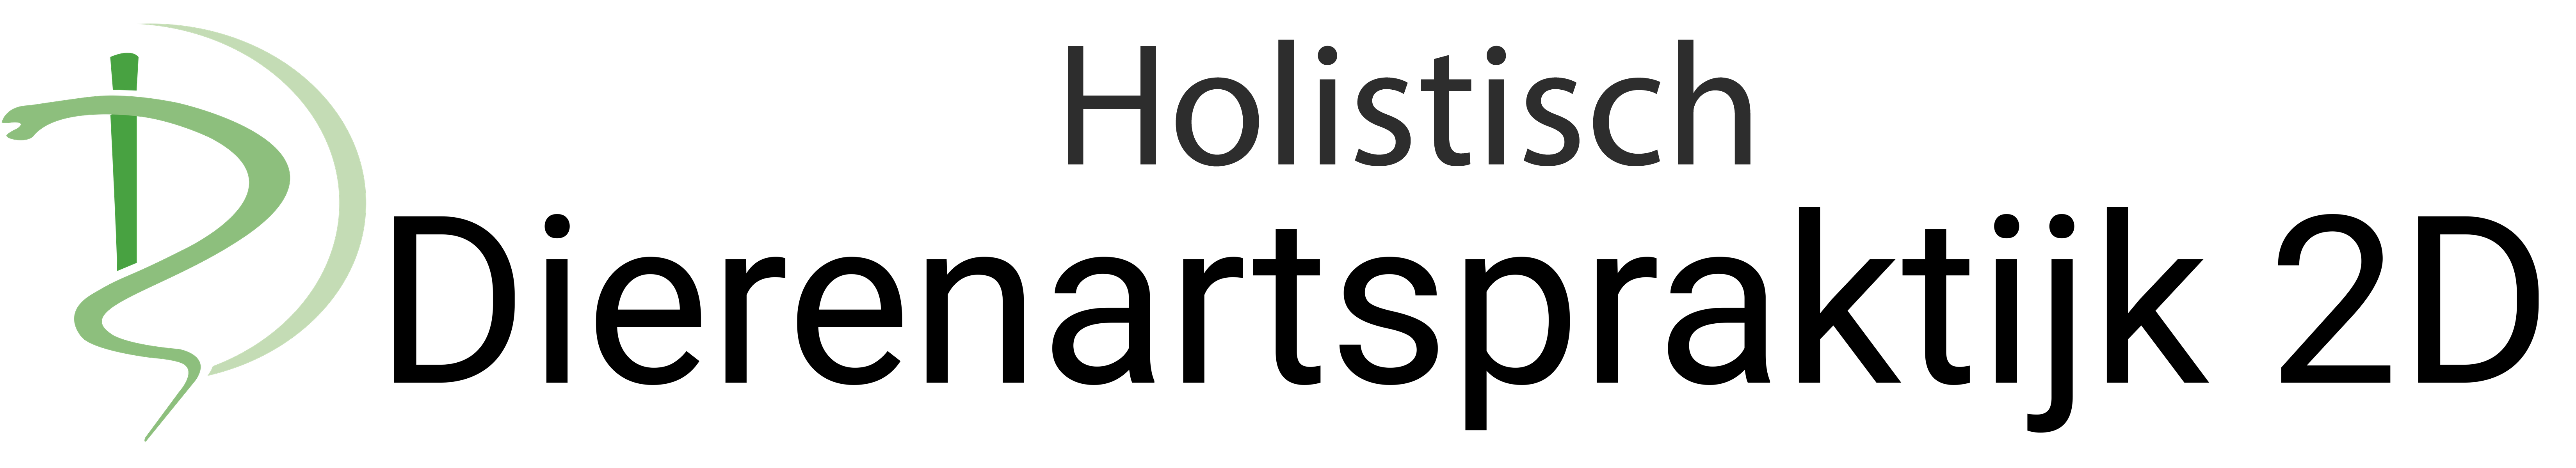 Holistische Dierenartspraktijk 2D logo